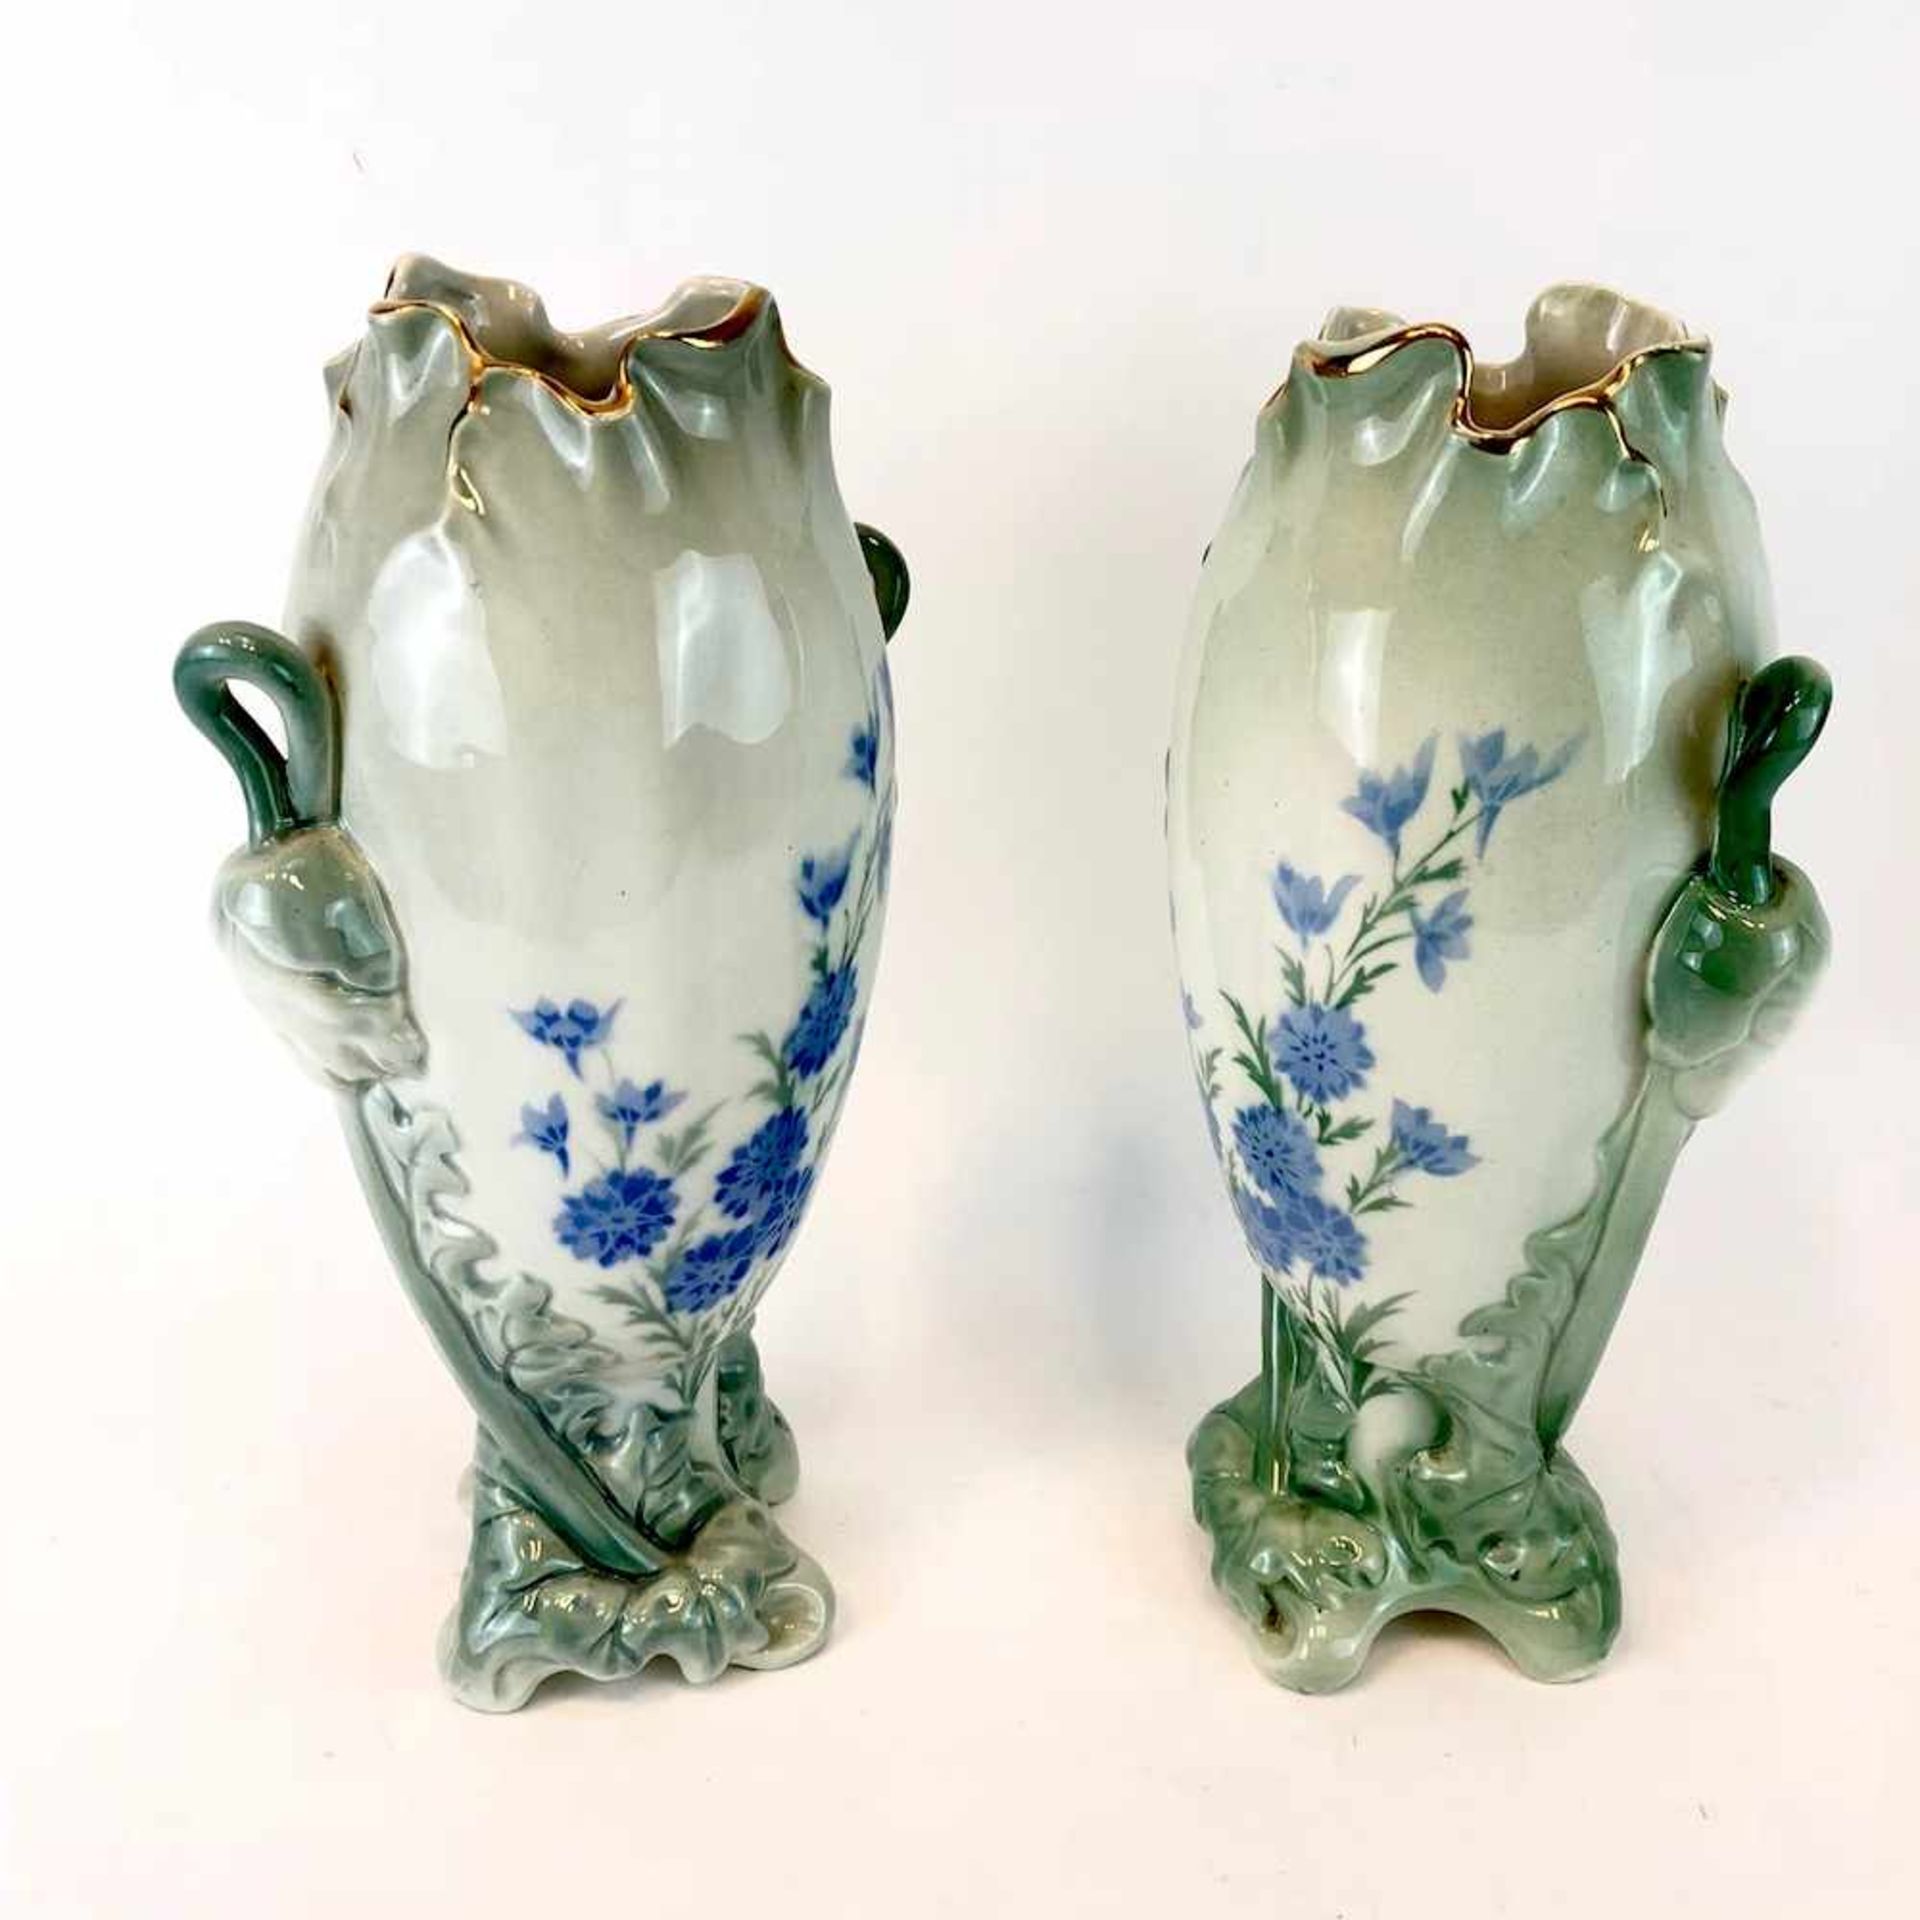 Paar Jugendtsil Vasen: Dekor Mohnblumen und Rittersporn. Luneville Faience / Fayence. Um 1900. - Bild 4 aus 5